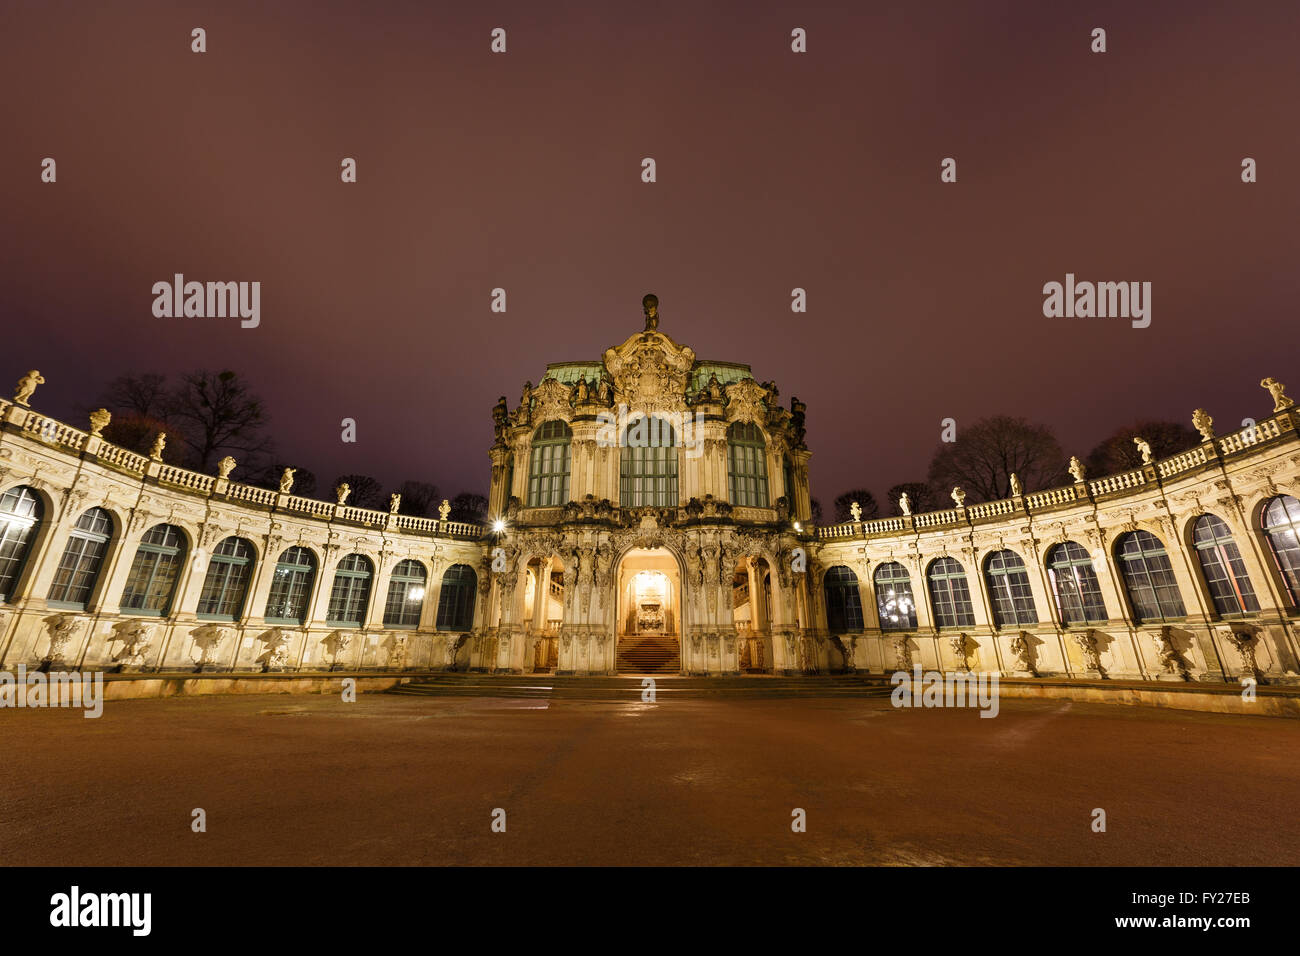 Dresde Zwinger panorama avec illumination de nuit, Allemagne Banque D'Images